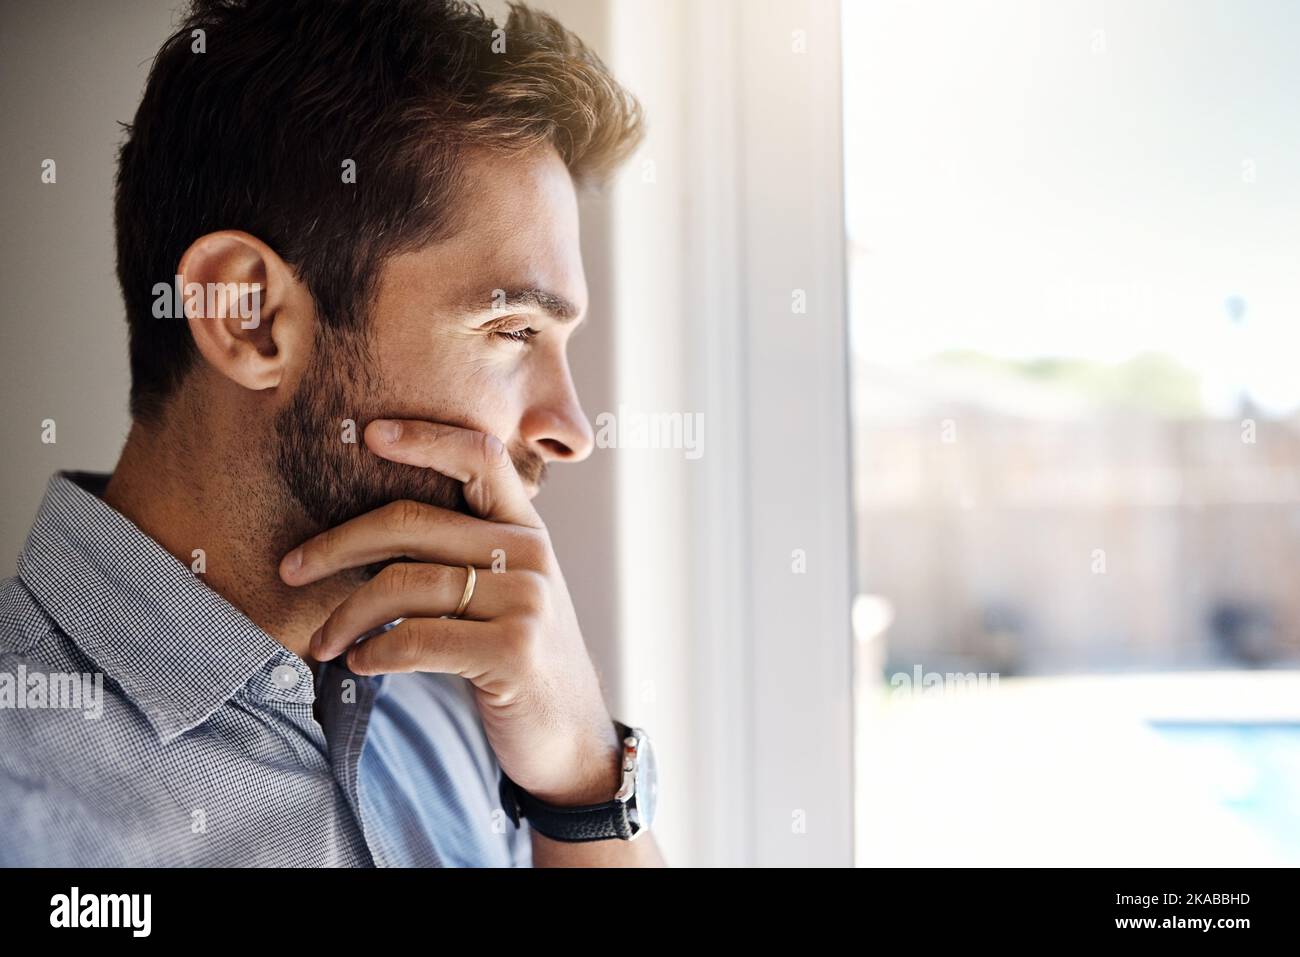 HES denkt darüber nach, etwas an seinem Leben zu ändern. Ein fokussierter junger Mann, der tagsüber durch ein Fenster schaut, während er zu Hause nachdenkt. Stockfoto